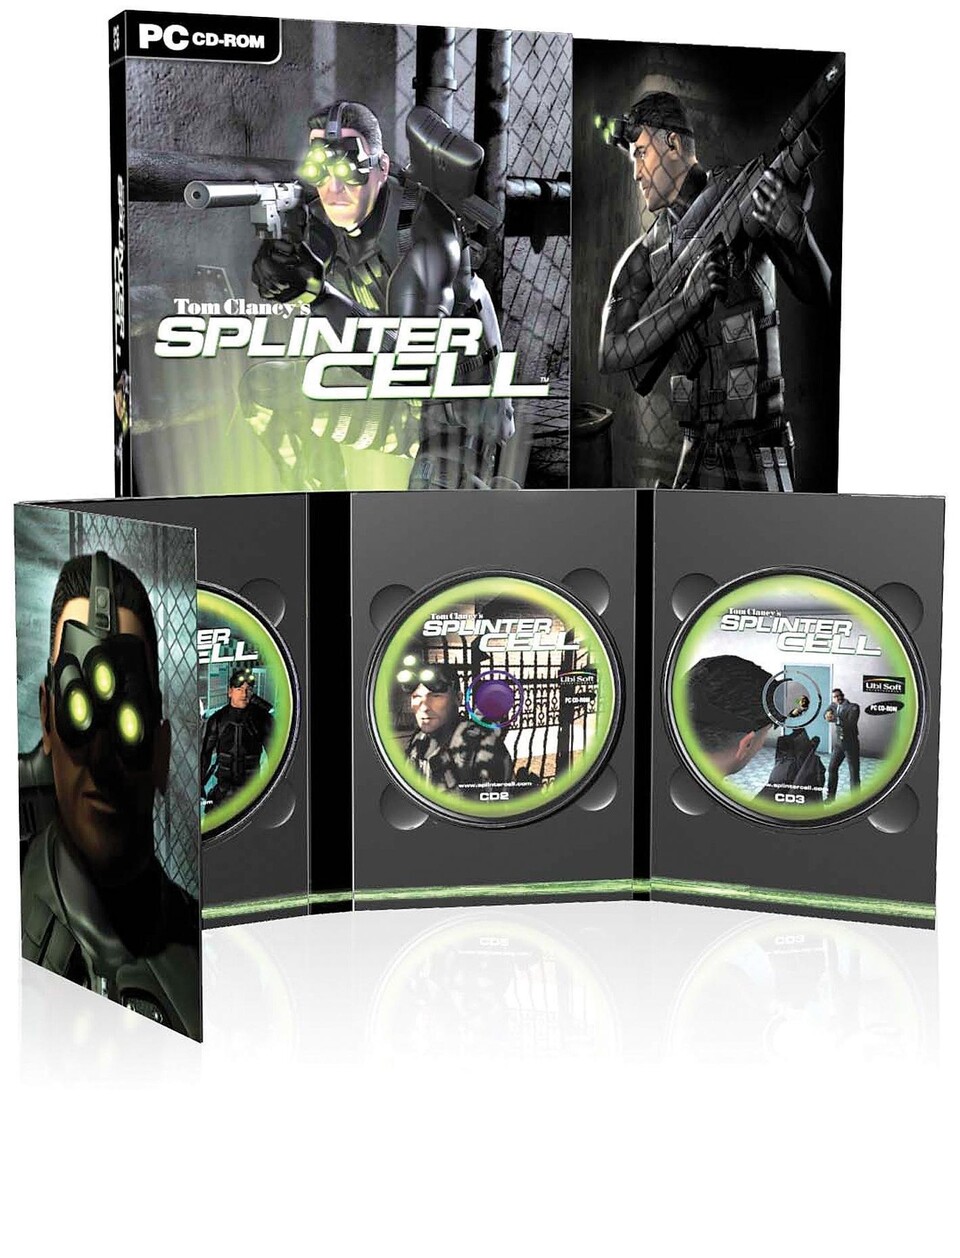 Lobenswert: Die Schachtel von Splinter Cell ist zwar im DVD-Format, allerdings im hübschen Papp-Schuber inklusive Aufkleber.